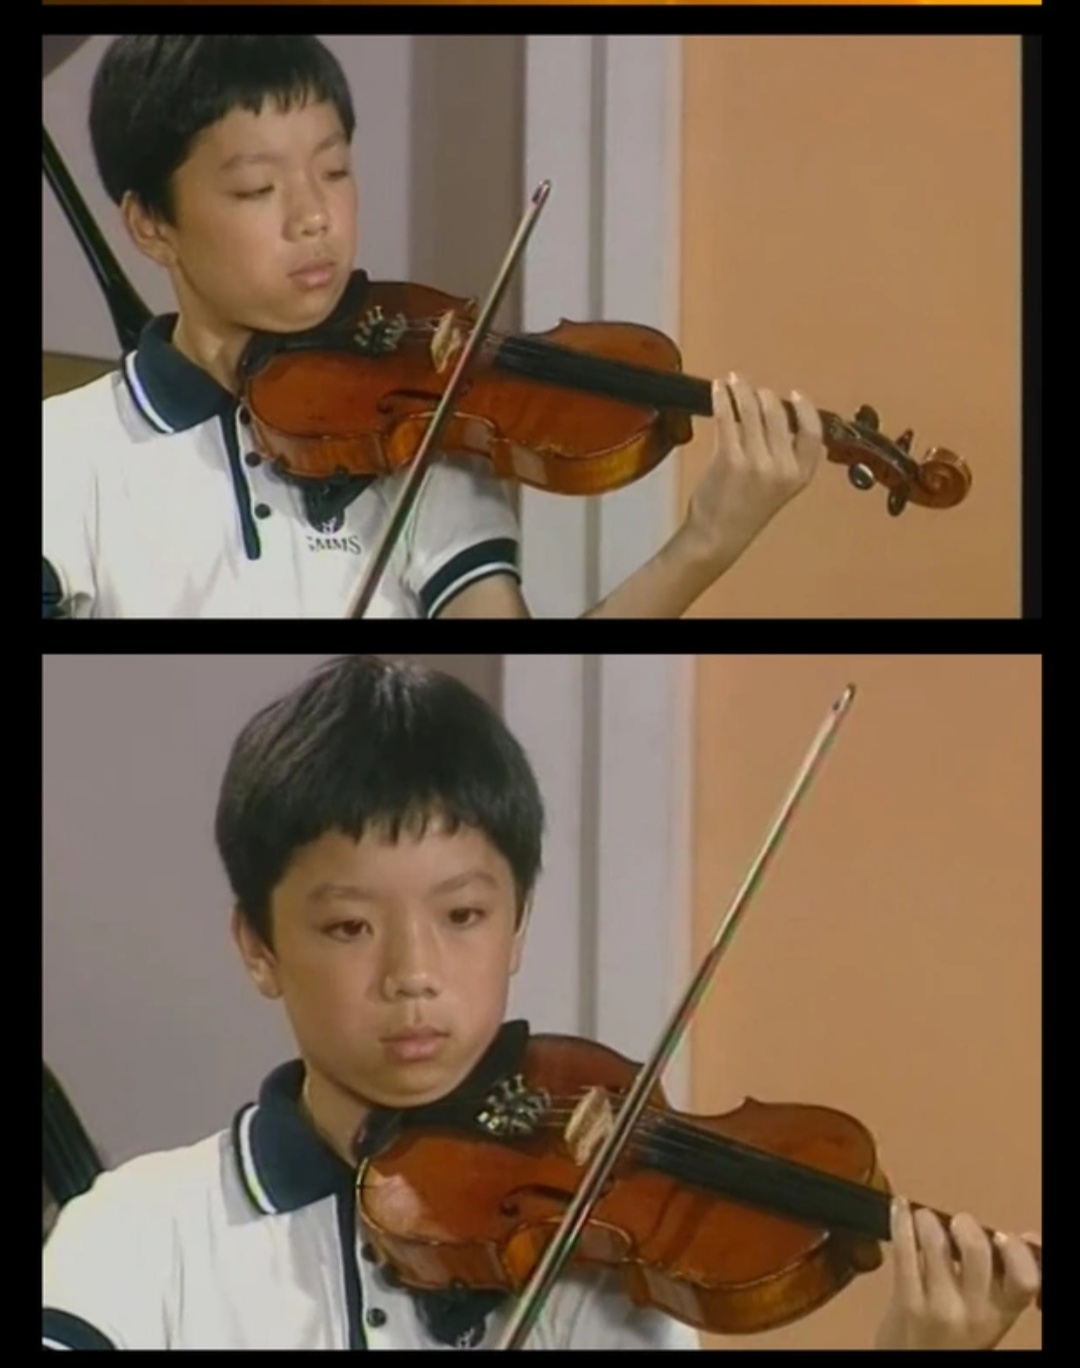 小提琴视频教程教学 自学零基础入门学习课程 音阶教程 铃木小提琴视频教程 儿童版 成人版教程 涵盖全面